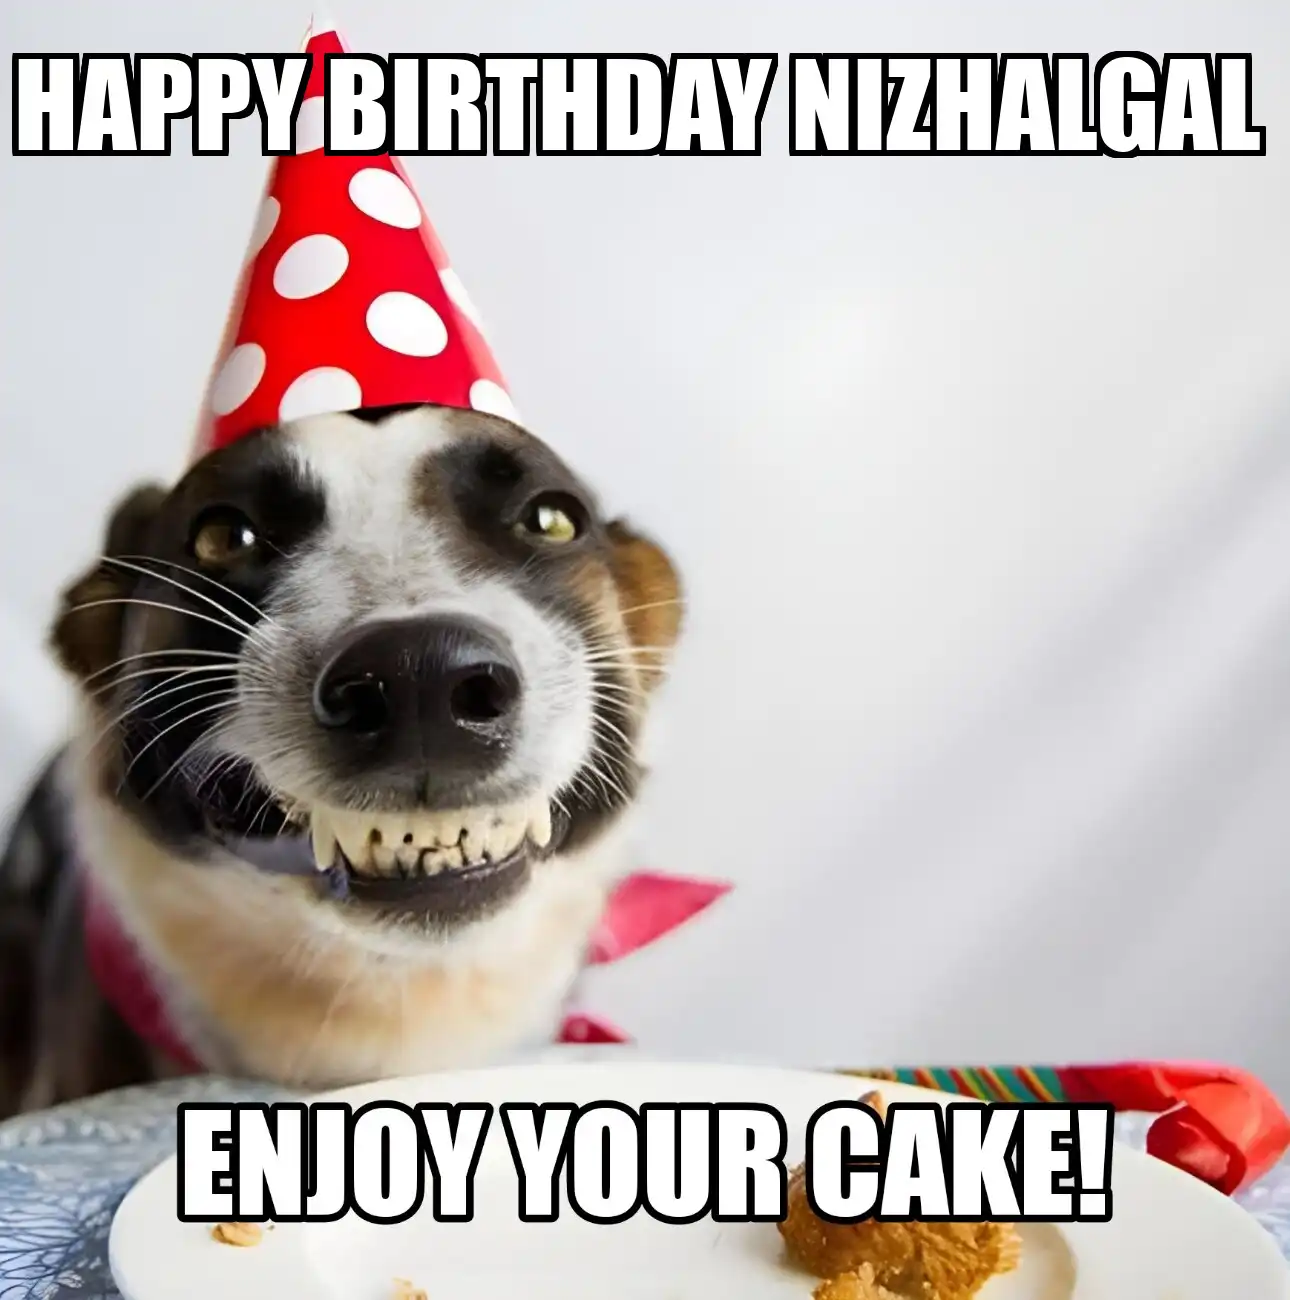 Happy Birthday Nizhalgal Enjoy Your Cake Dog Meme